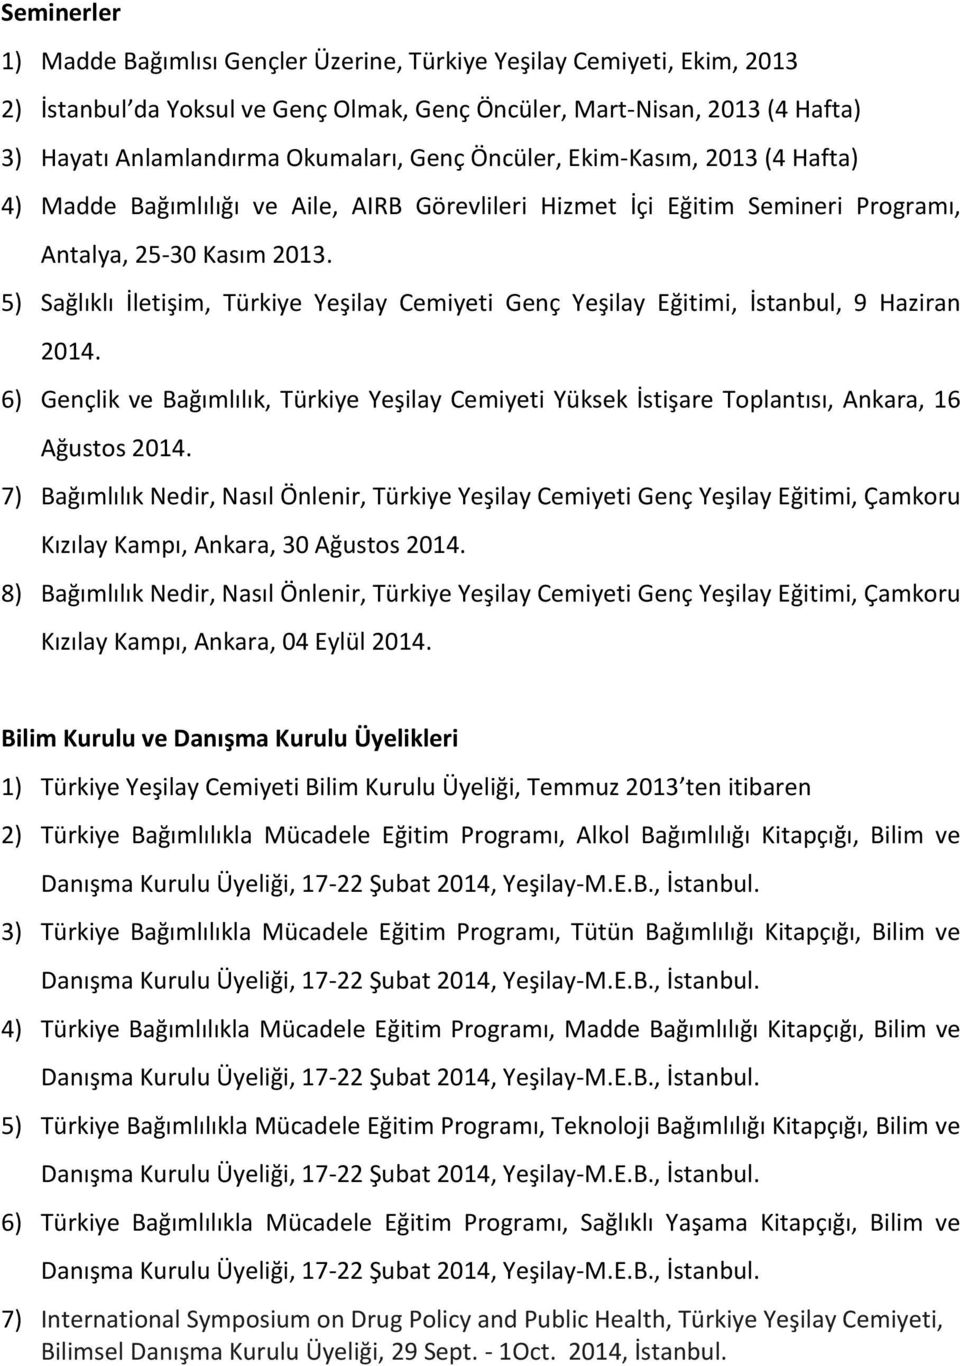 5) Sağlıklı İletişim, Türkiye Yeşilay Cemiyeti Genç Yeşilay Eğitimi, İstanbul, 9 Haziran 2014. 6) Gençlik ve Bağımlılık, Türkiye Yeşilay Cemiyeti Yüksek İstişare Toplantısı, Ankara, 16 Ağustos 2014.